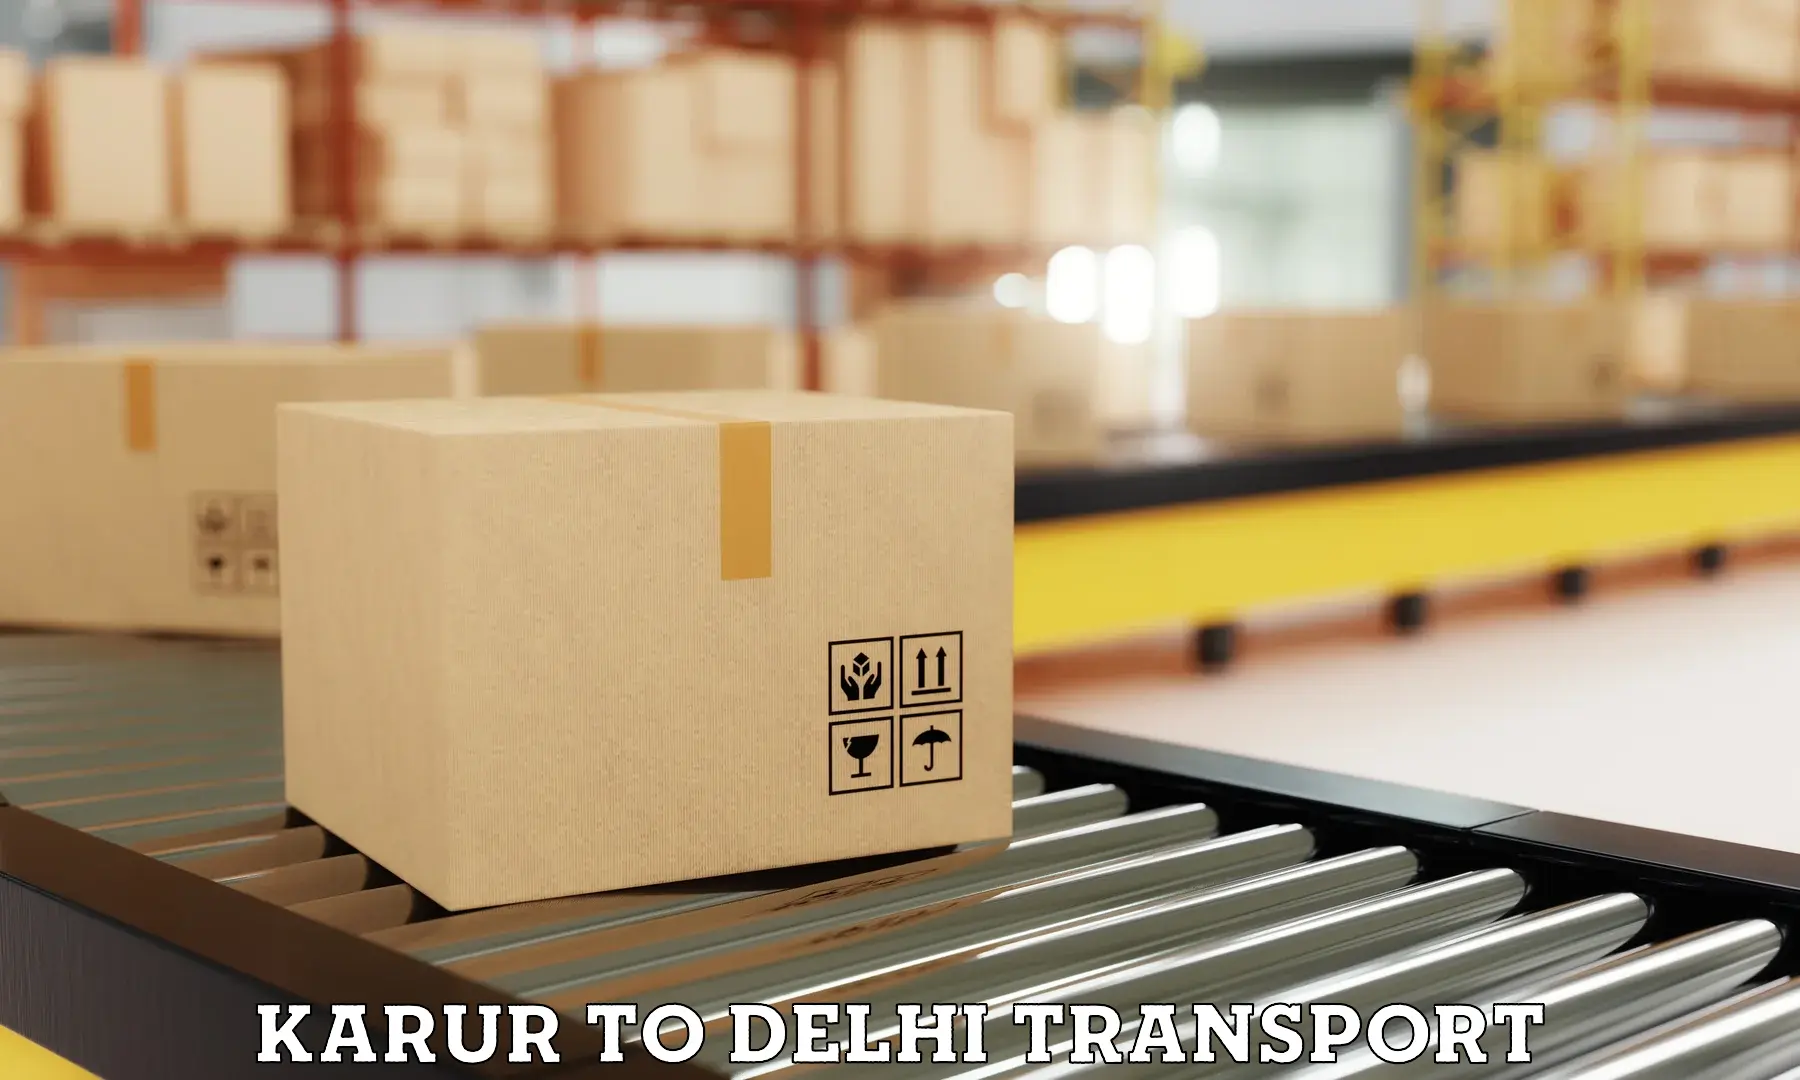 Commercial transport service Karur to Delhi Technological University DTU